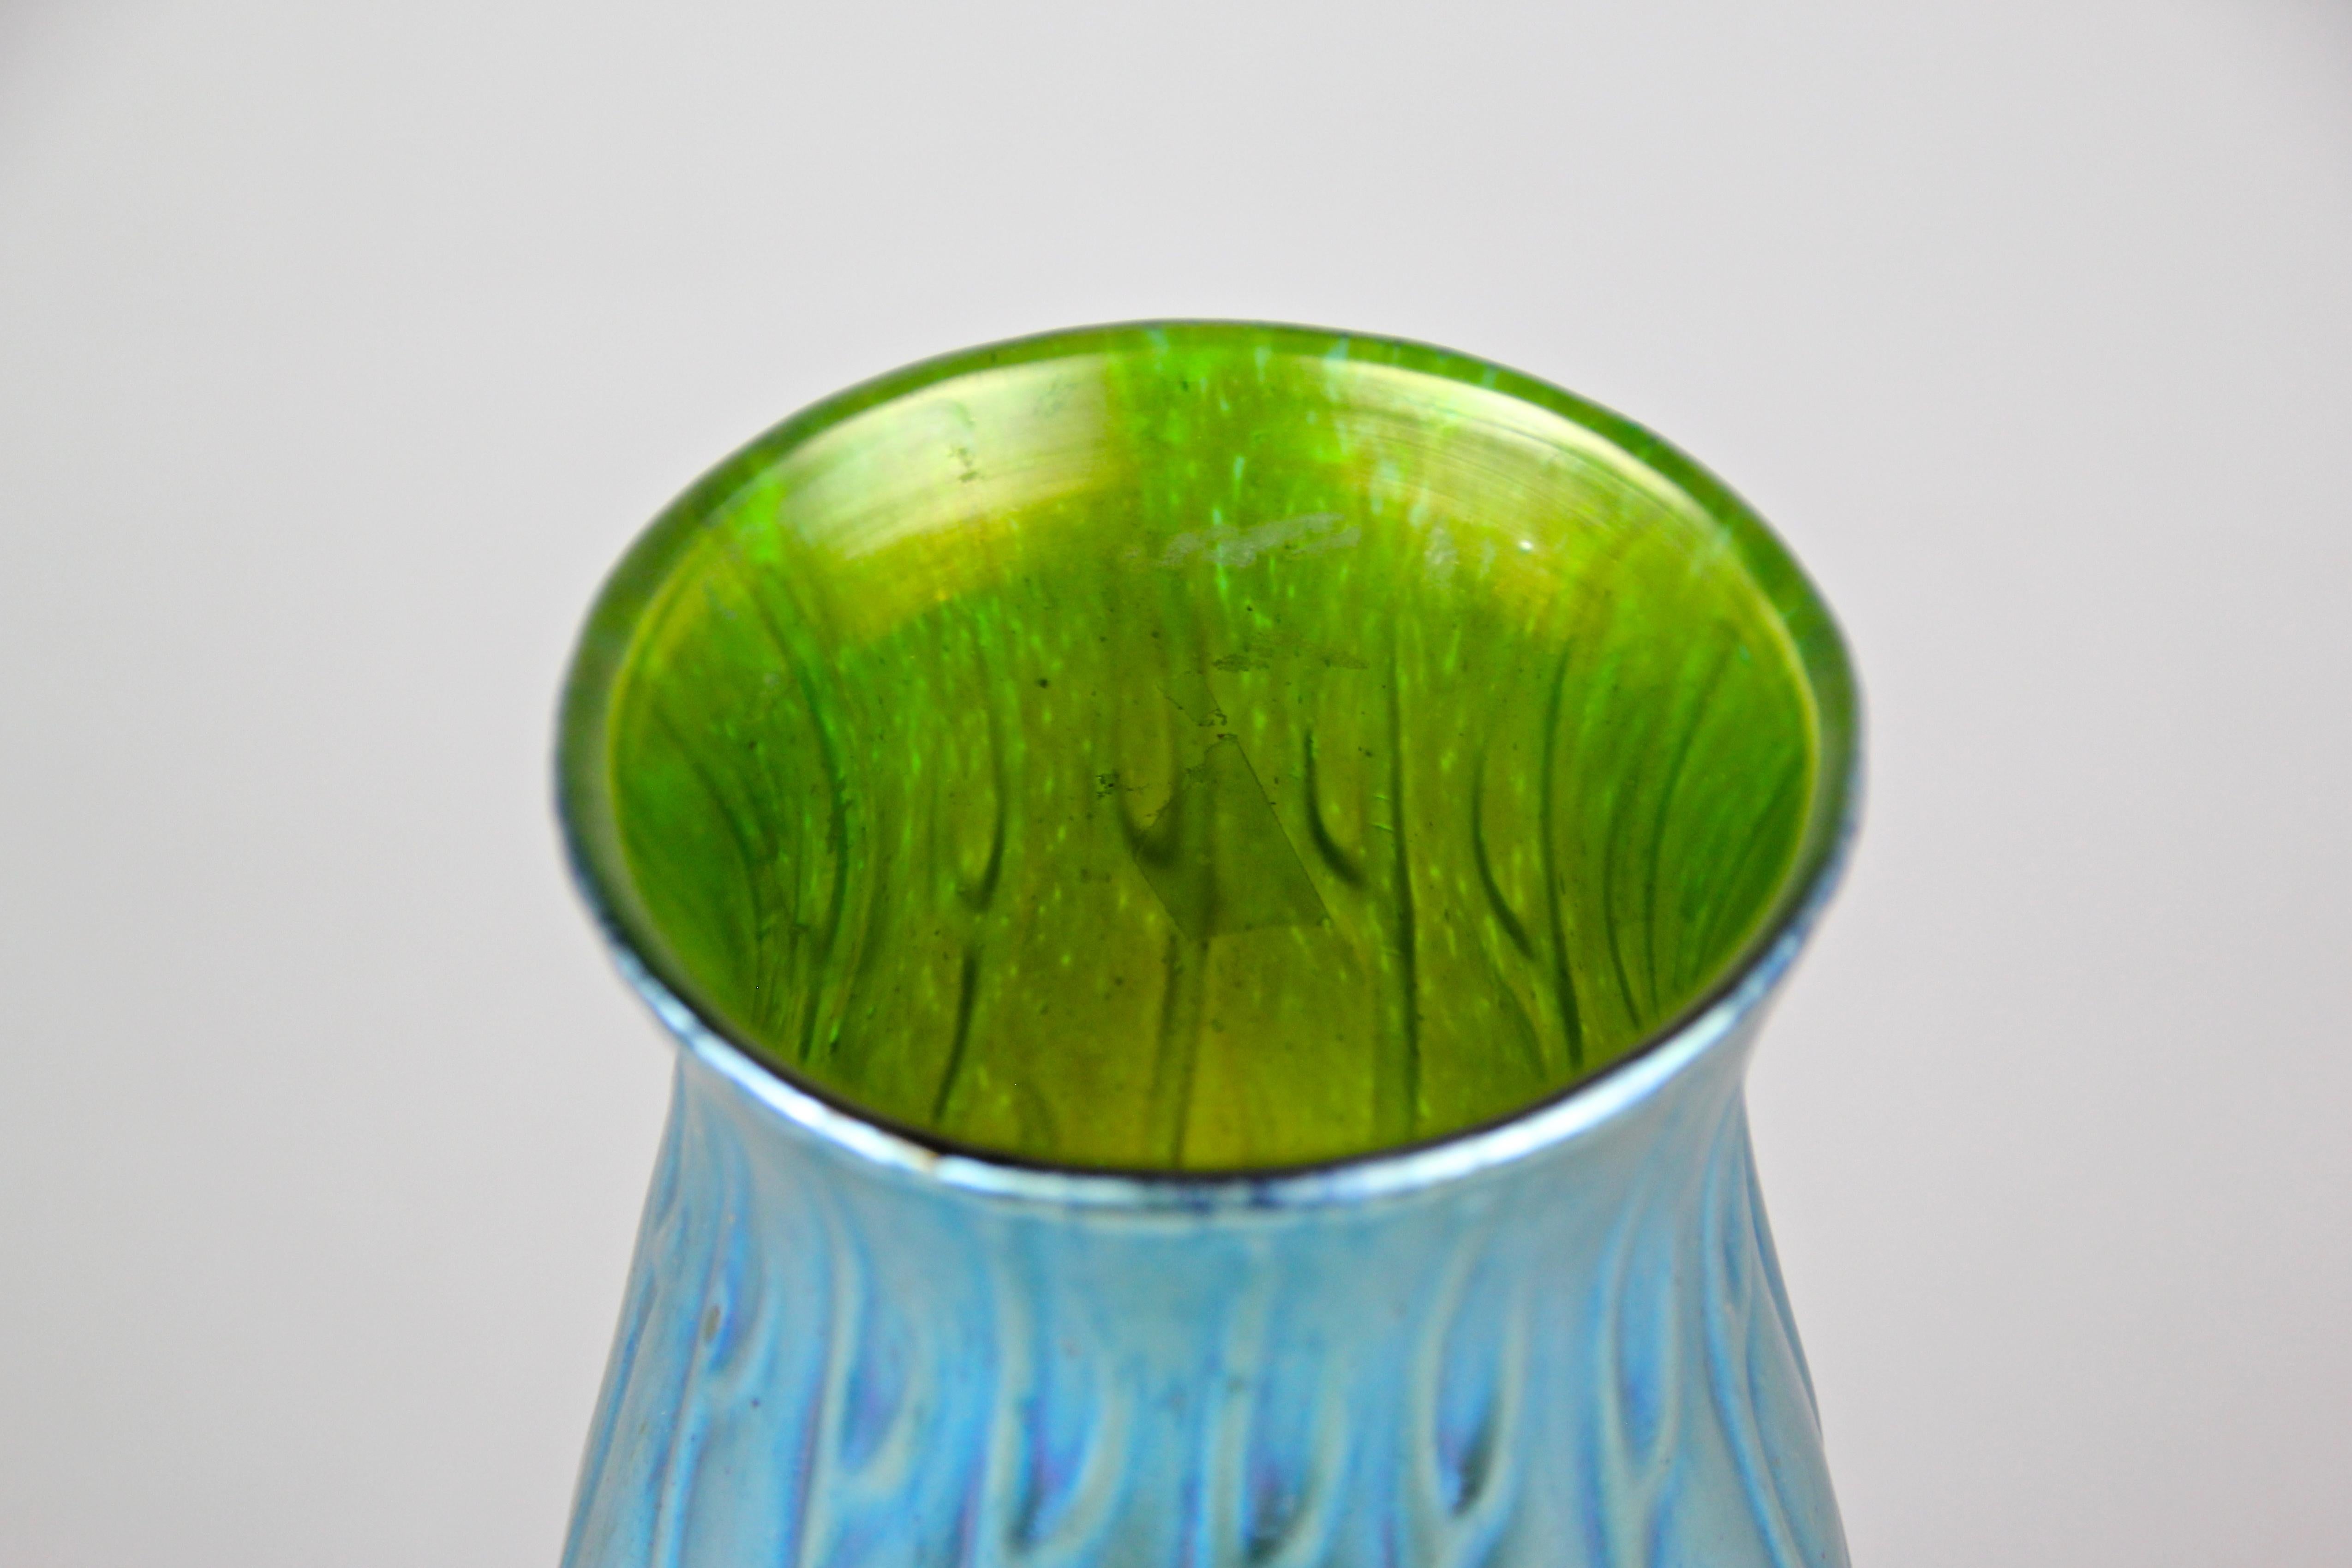 Loetz Witwe Glass Vase Decor 